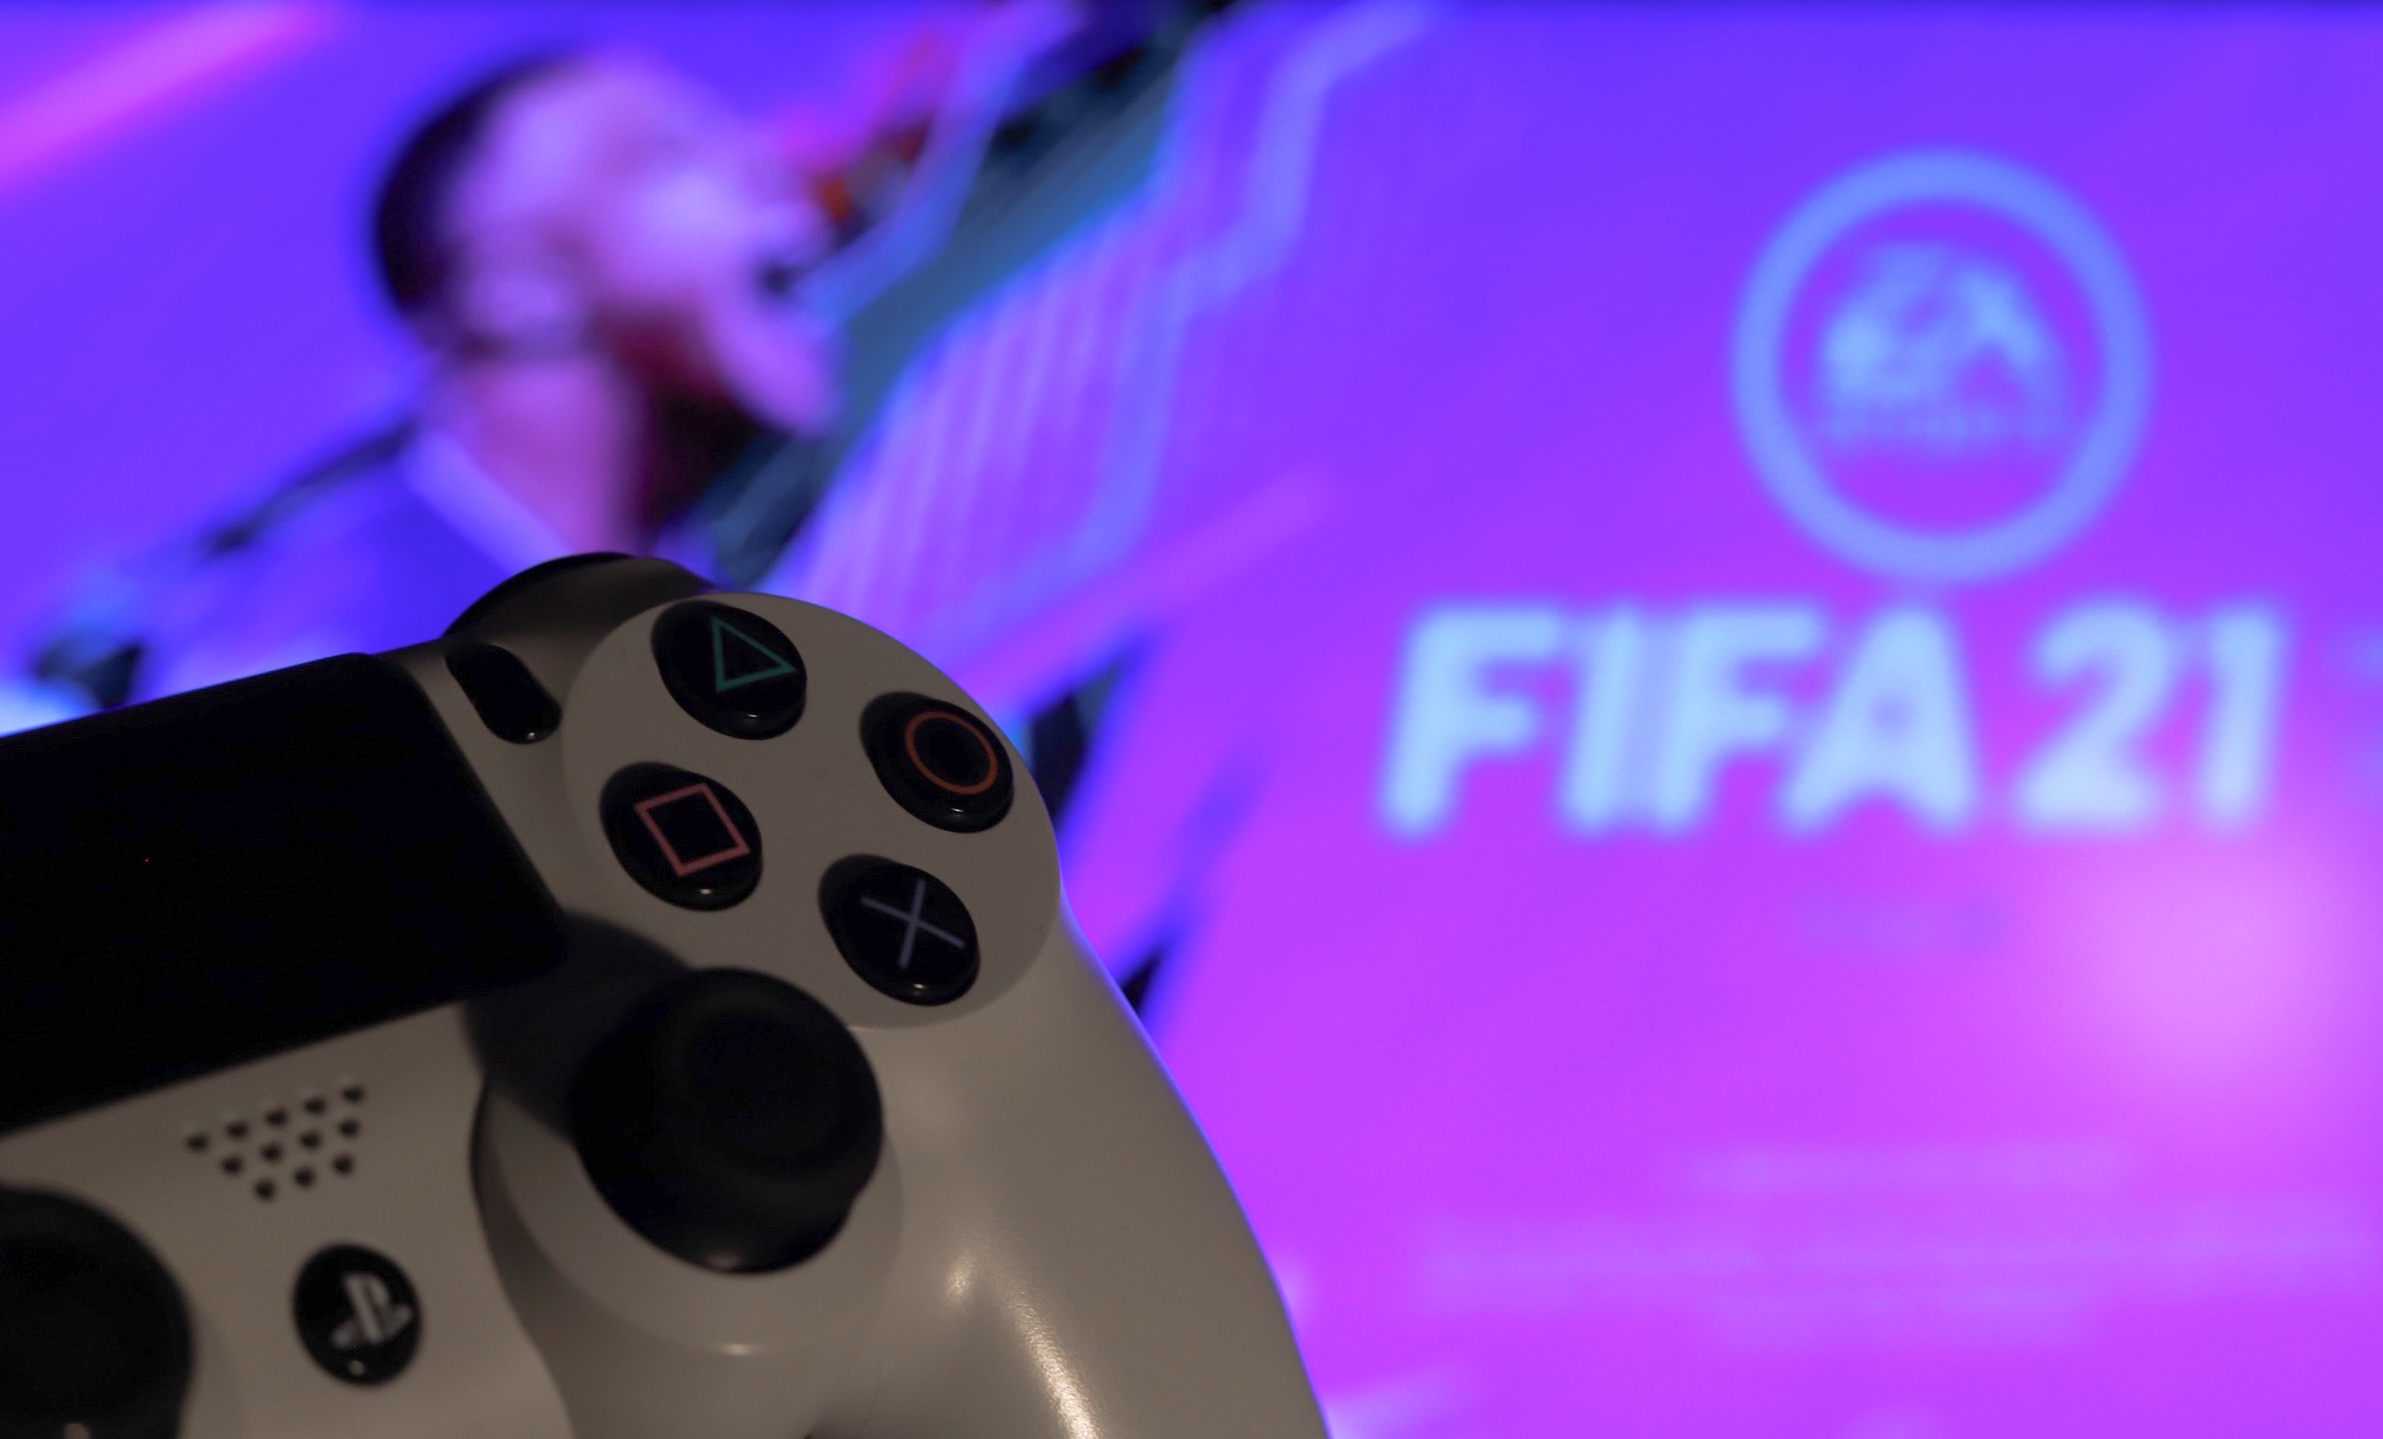 FIFA 21 - PS4 e PS5 - Game Games - Loja de Games Online